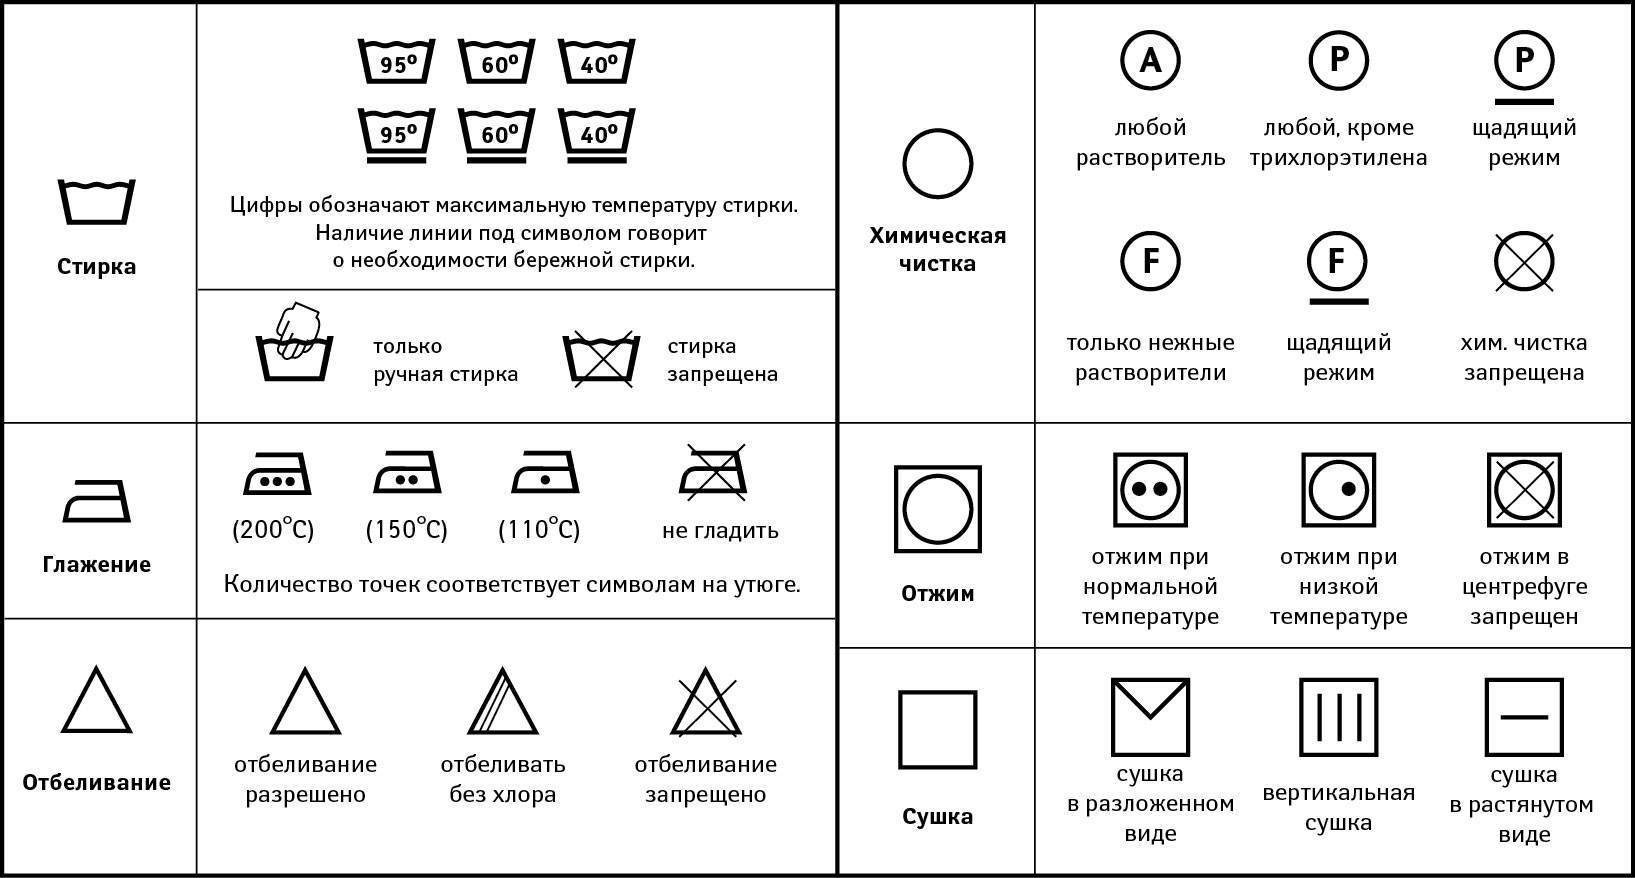 Символы по уходу за одеждой - значки для стирки – инфографика
символы по уходу за одеждой - значки для стирки – инфографика